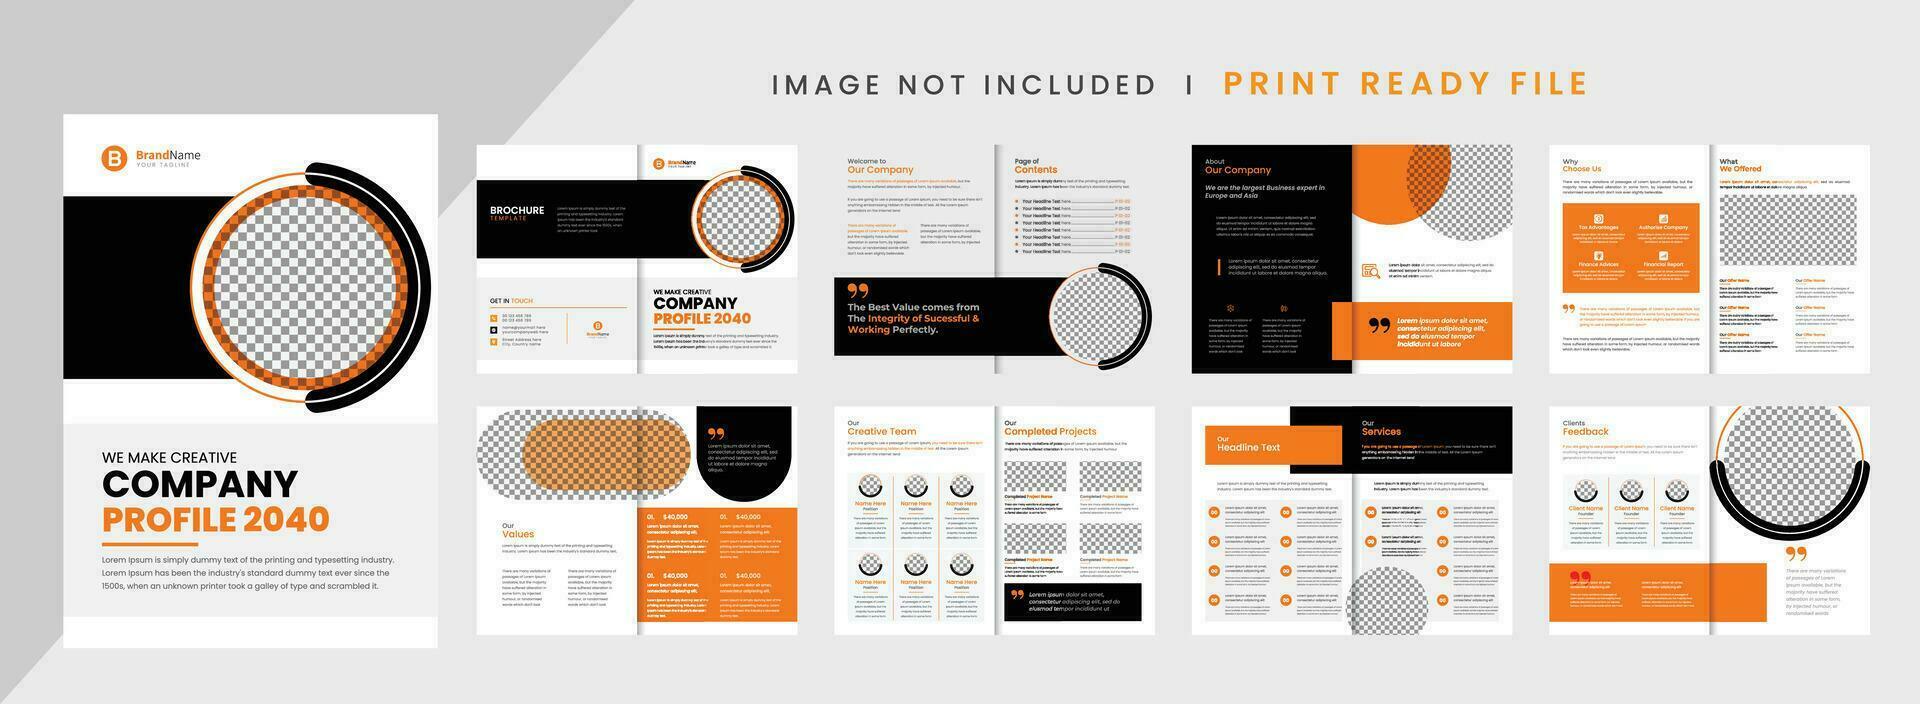 Company Profile Brochure Template Design vector